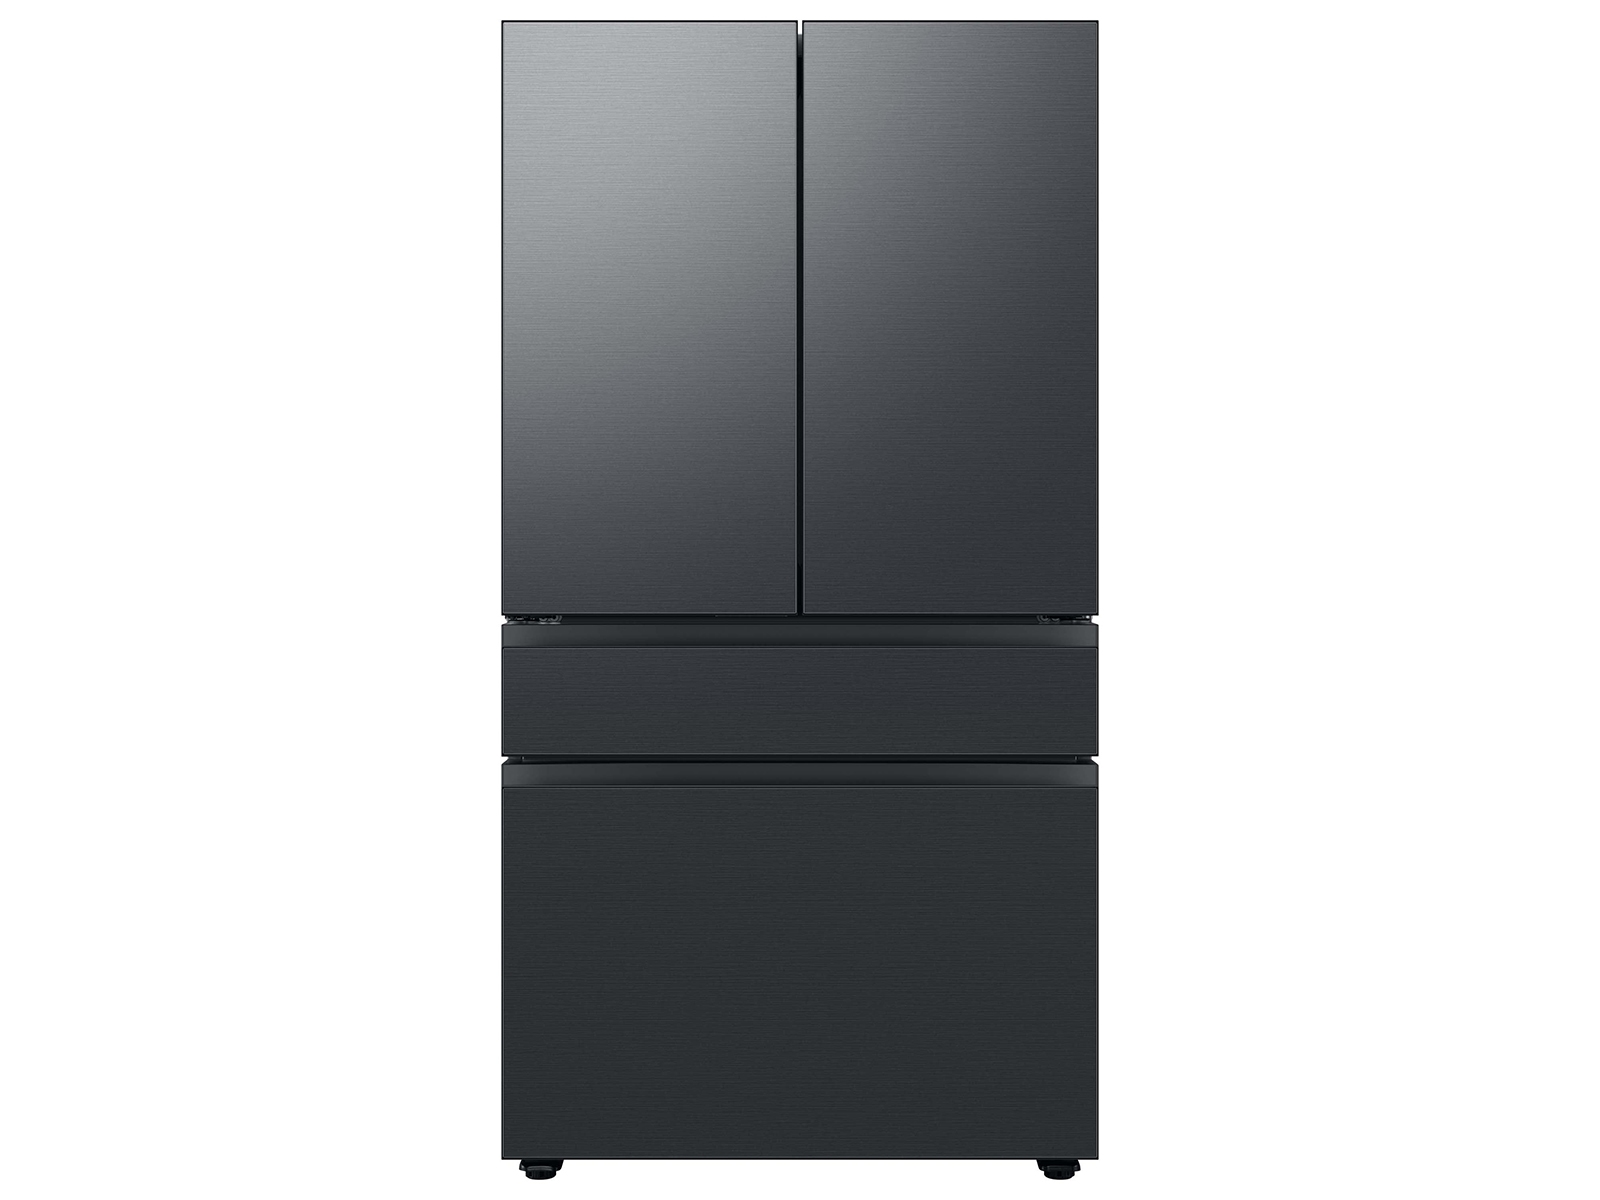 Bespoke 4-Door French Door Refrigerator (23 cu. ft.) with Customizable Door Panel Colors and Beverage Center&trade; in Matte Black Steel